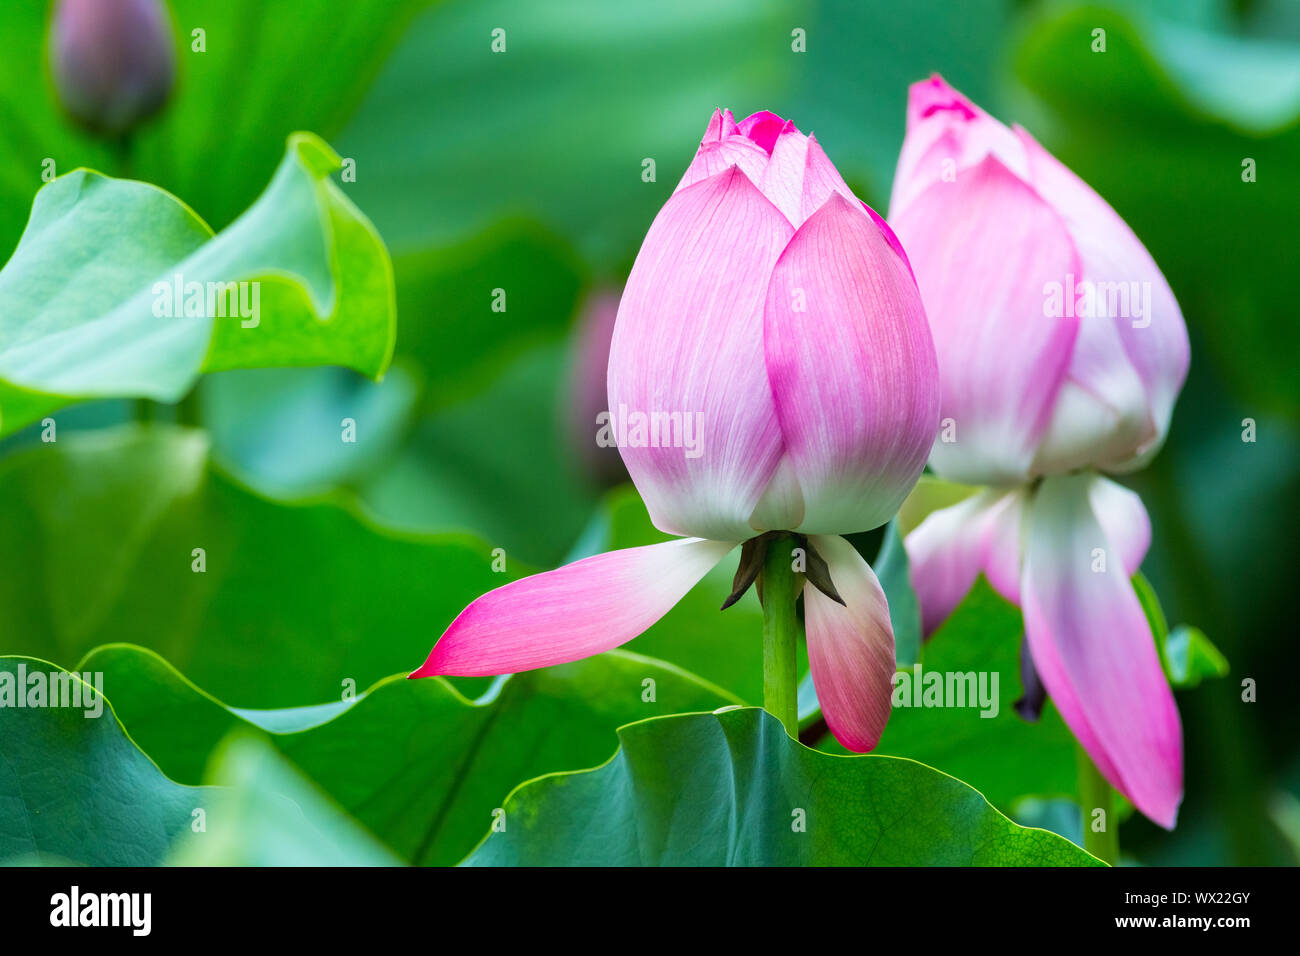 lotus flower bud closeup Stock Photo